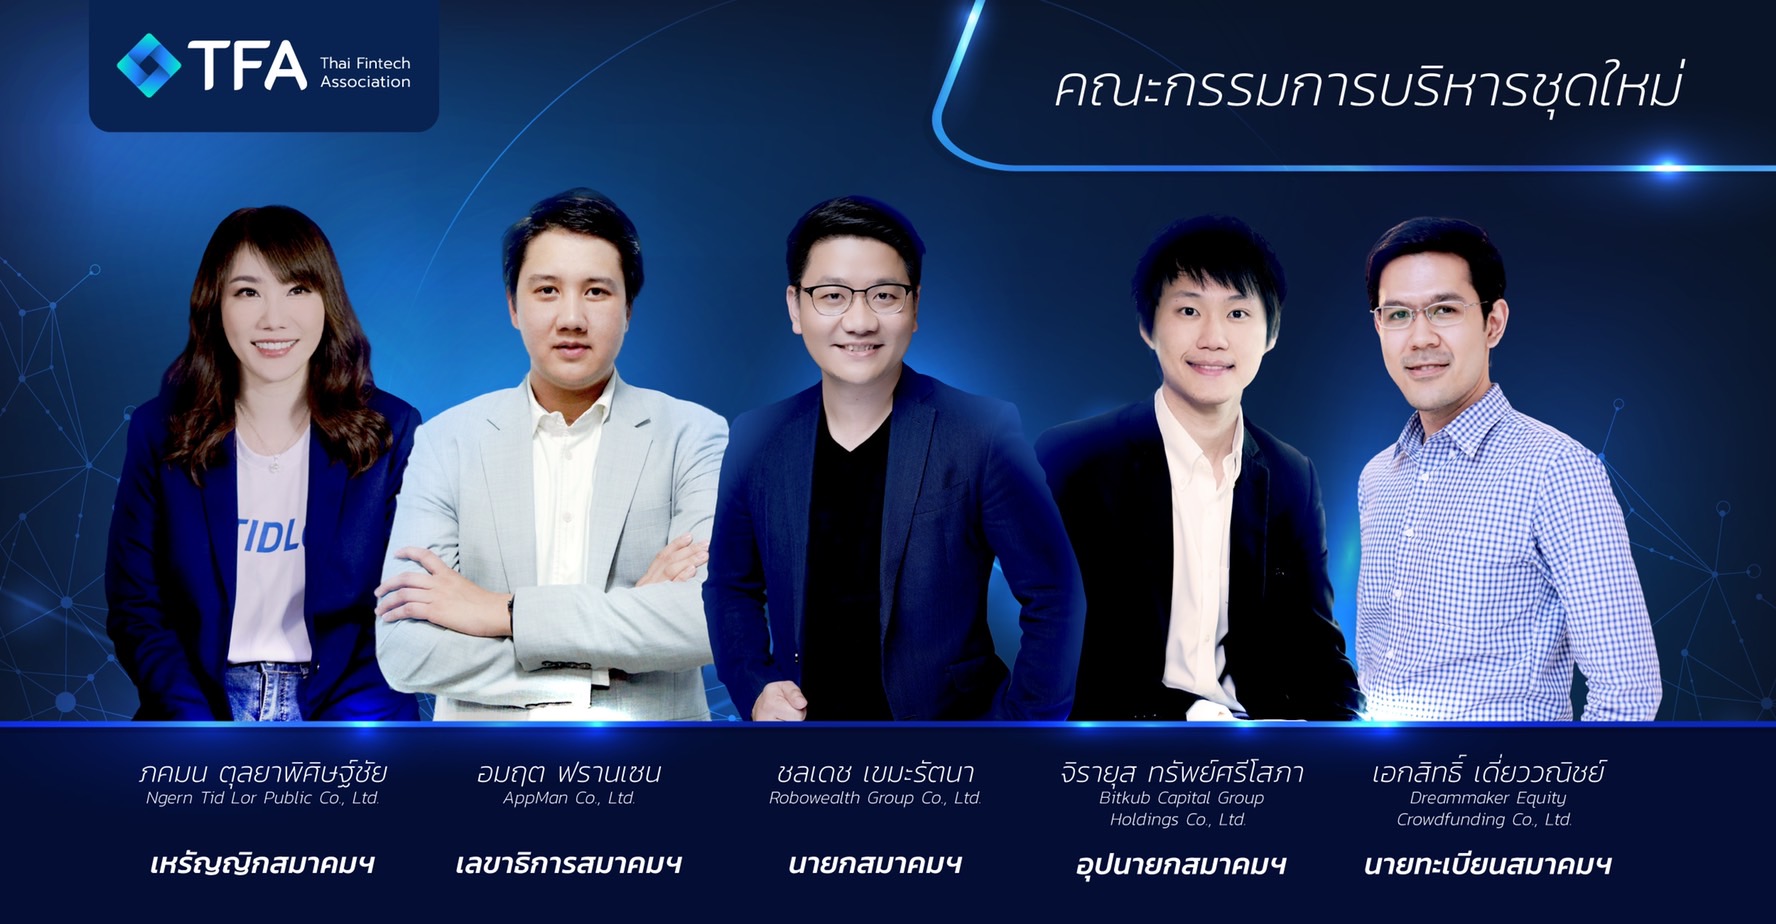 เผยวิสัยทัศน์ นึก ชลเดช นายกสมาคมฟินเทค ตั้งเป้าดันประเทศไทย สู่ Top 5 ฟินเทคฮับในเอเชีย ภายใน 2 ปี